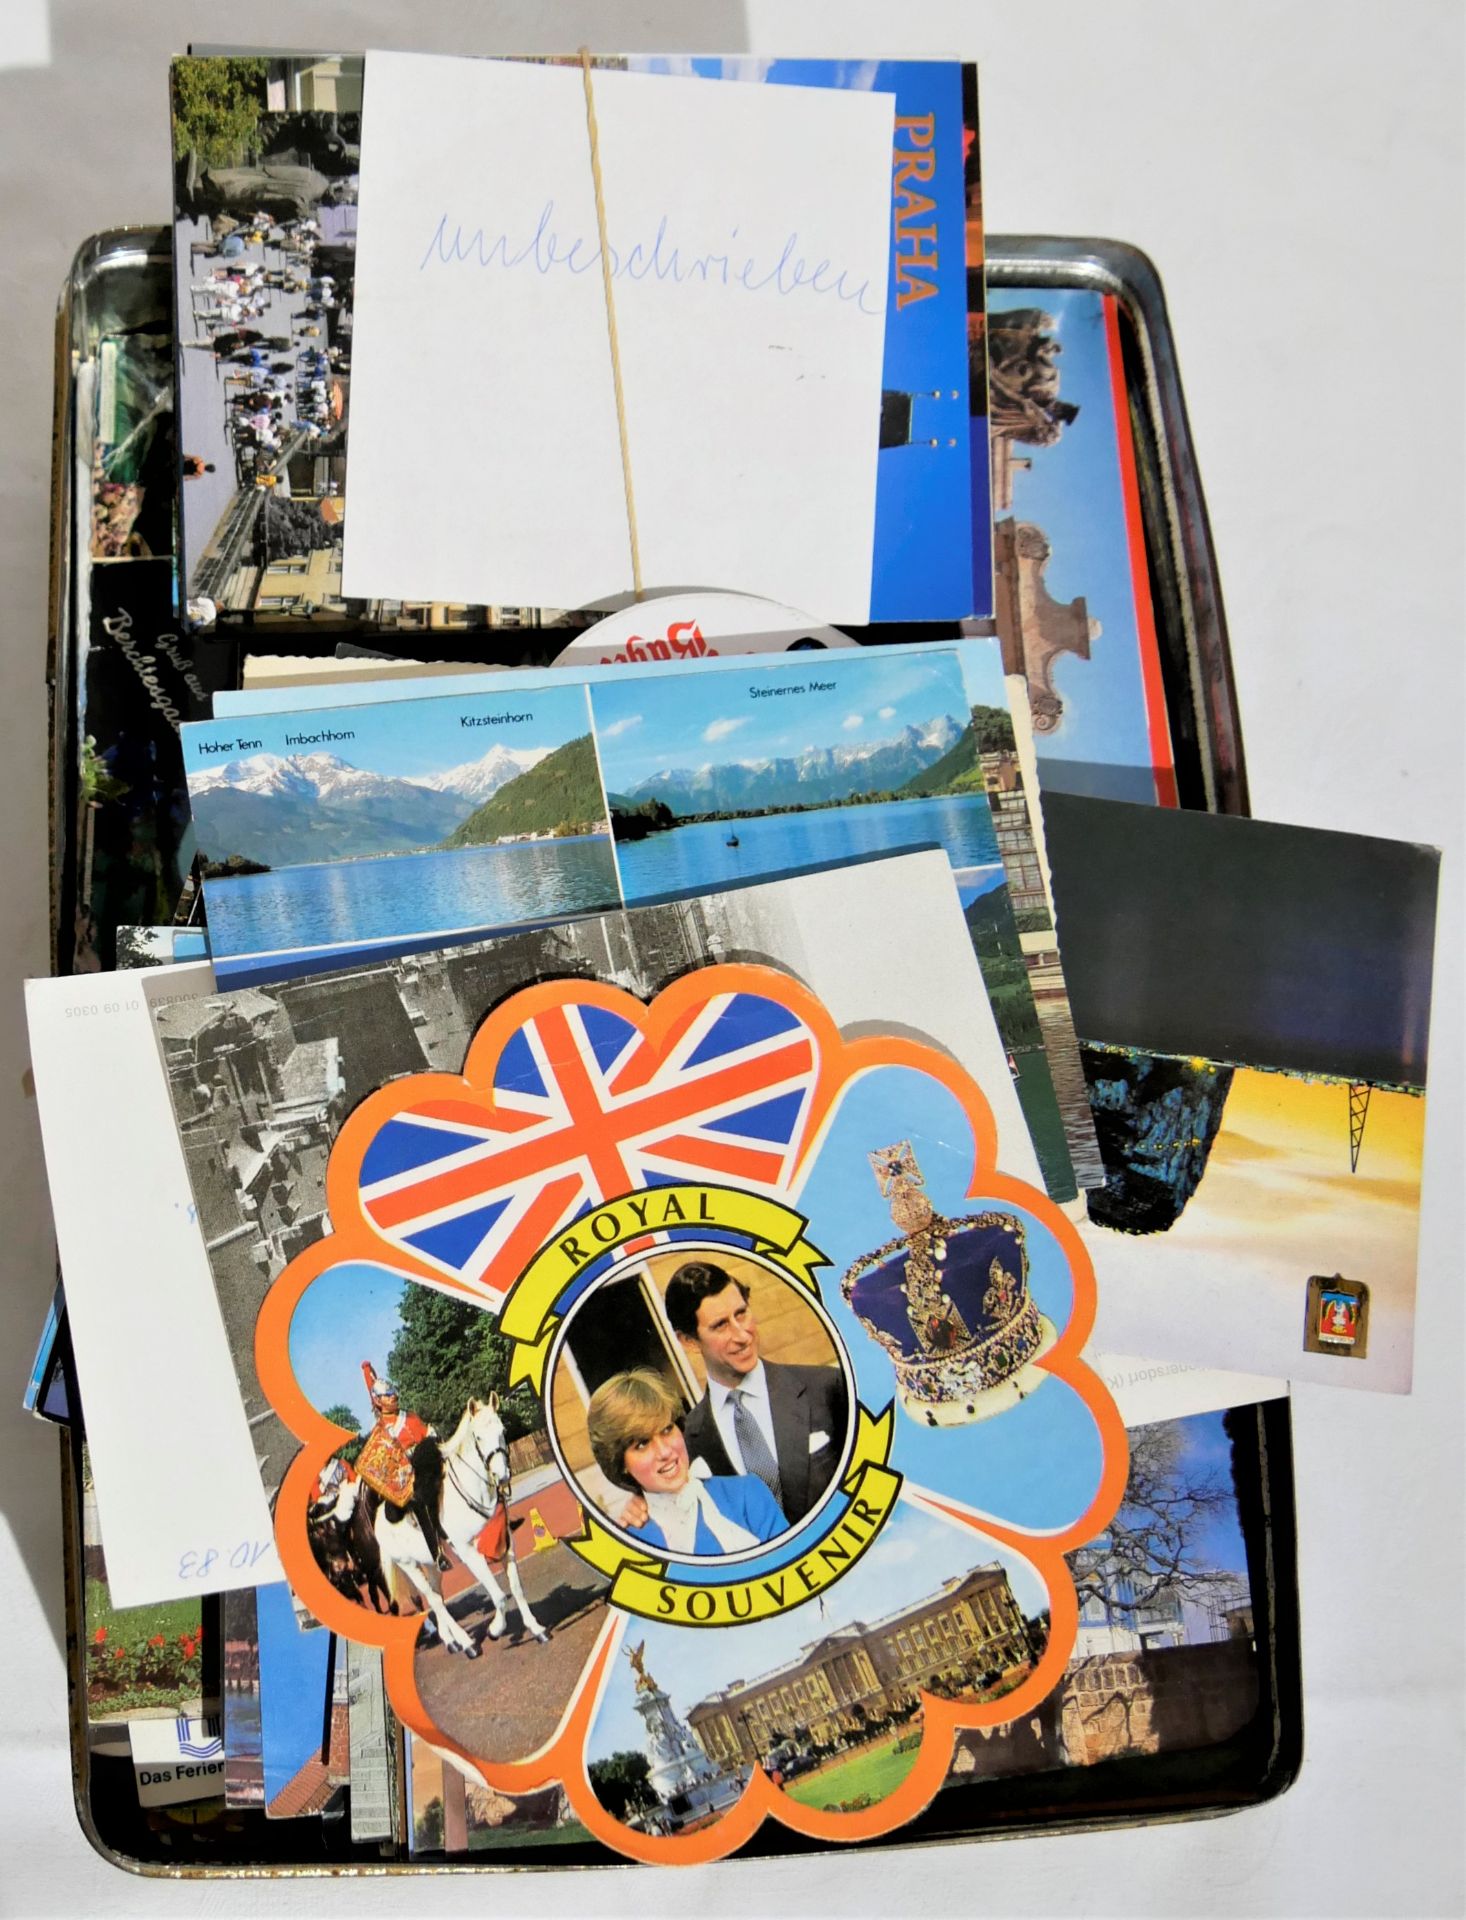 Lot Postkarten Europa, 70/80er Jahre. In alter Blechdose. Gelaufen und ungelaufen. Vielleicht - Bild 2 aus 2